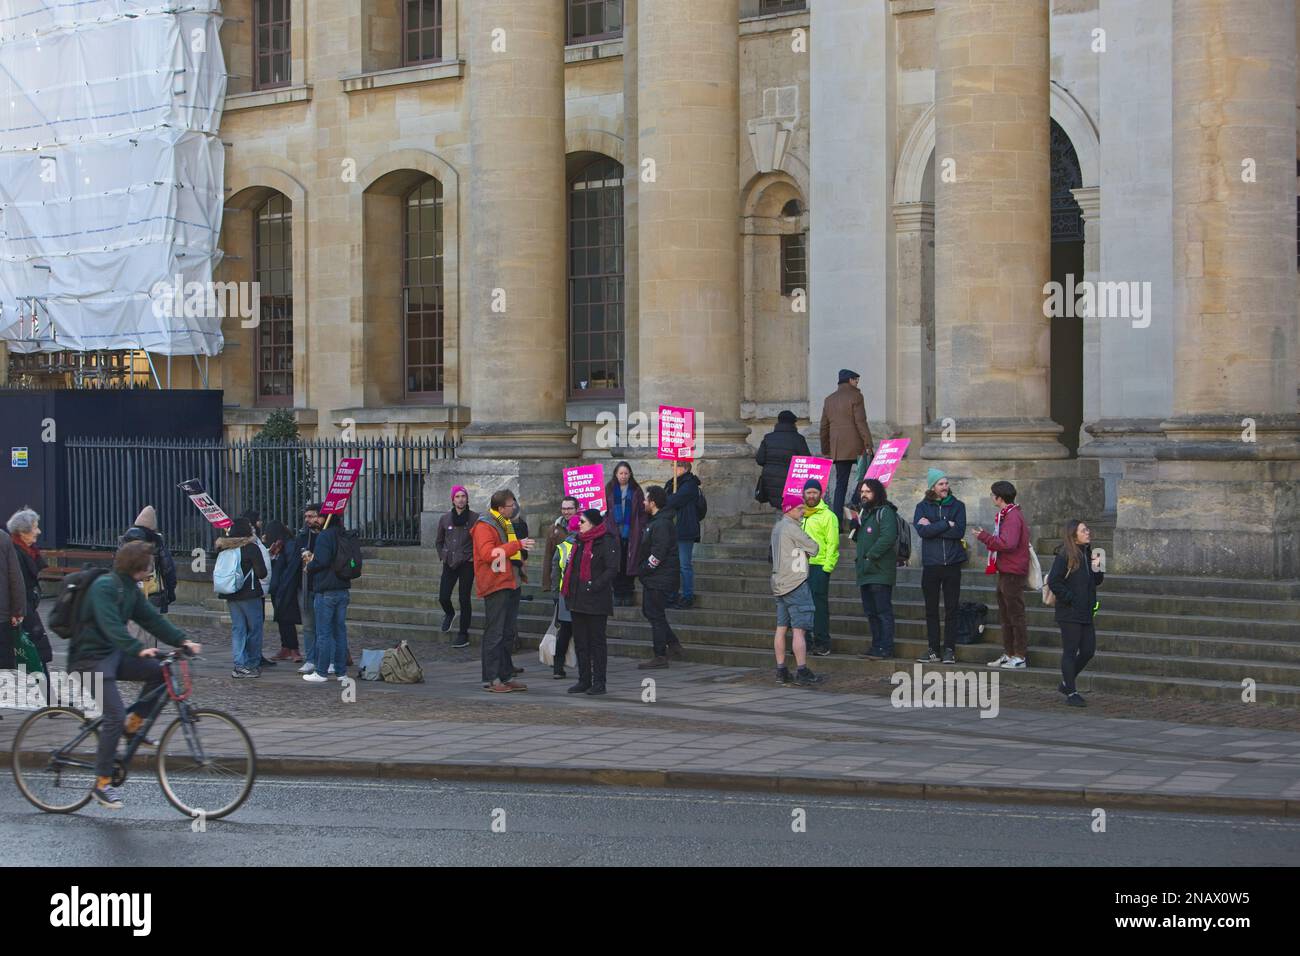 Membres en grève de l'UCU (University and College Union) du personnel de l'Université d'Oxford à l'extérieur de la bibliothèque Bodleian dans le centre d'Oxford Banque D'Images